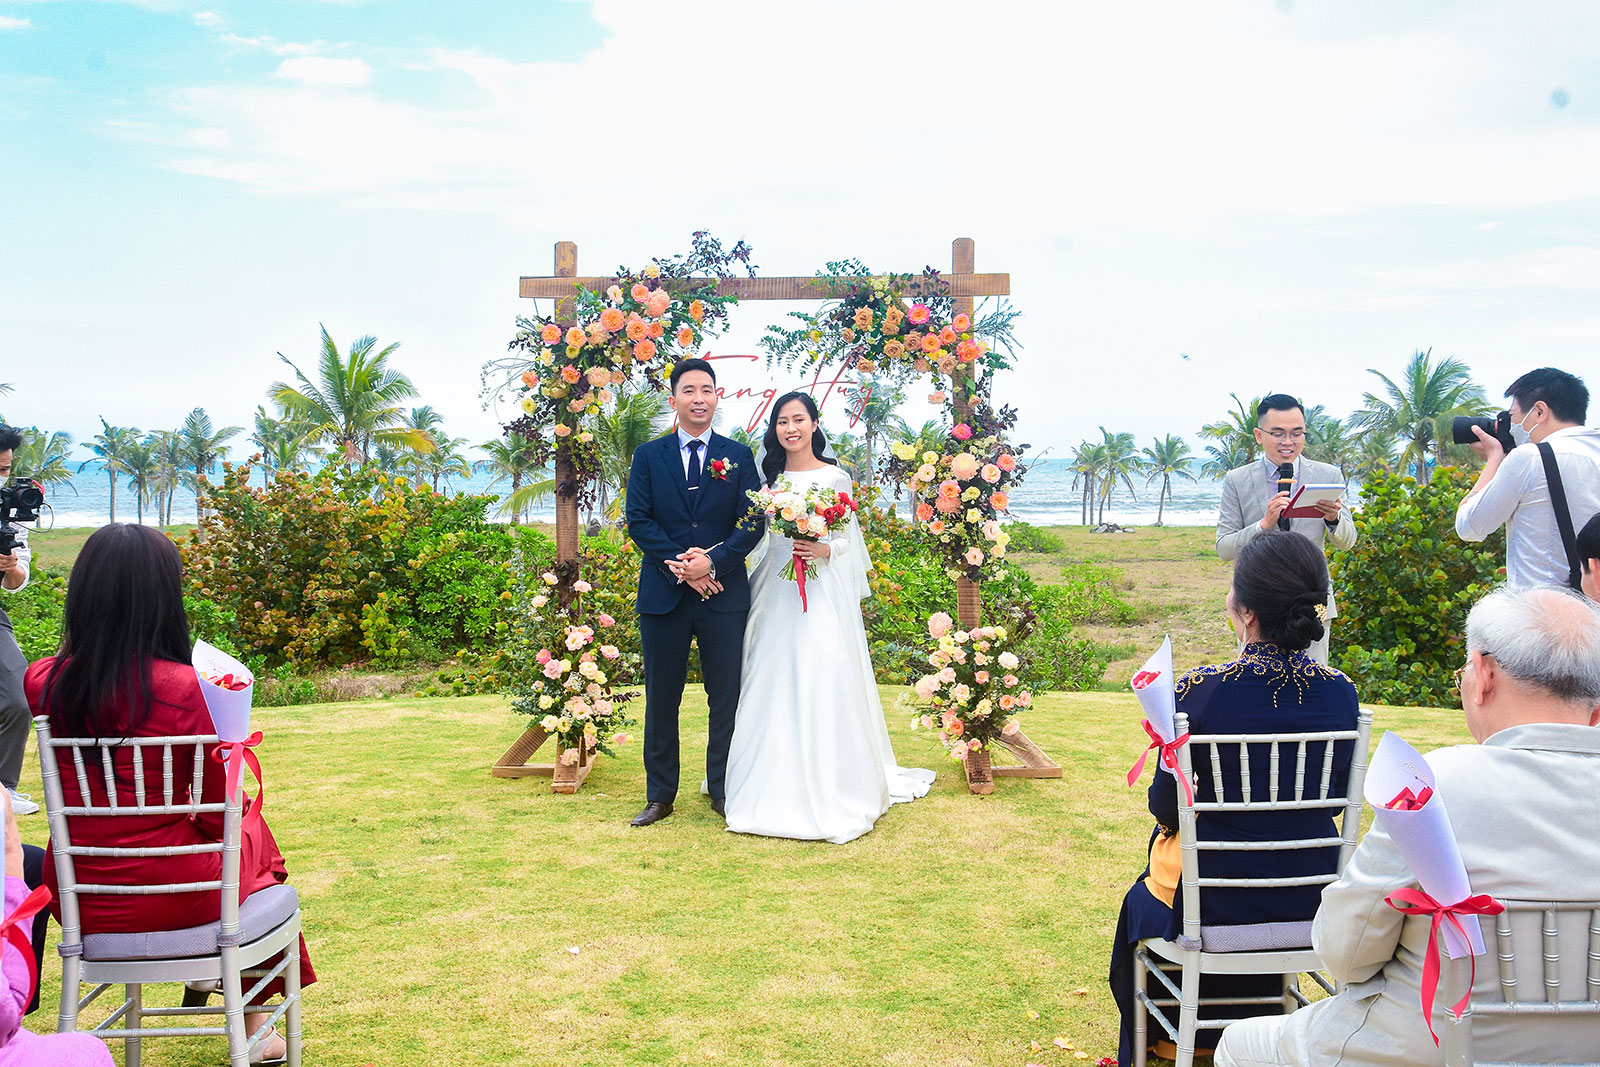 WEDDING HUY - TRANG AT FURAMA RESORT DANANG